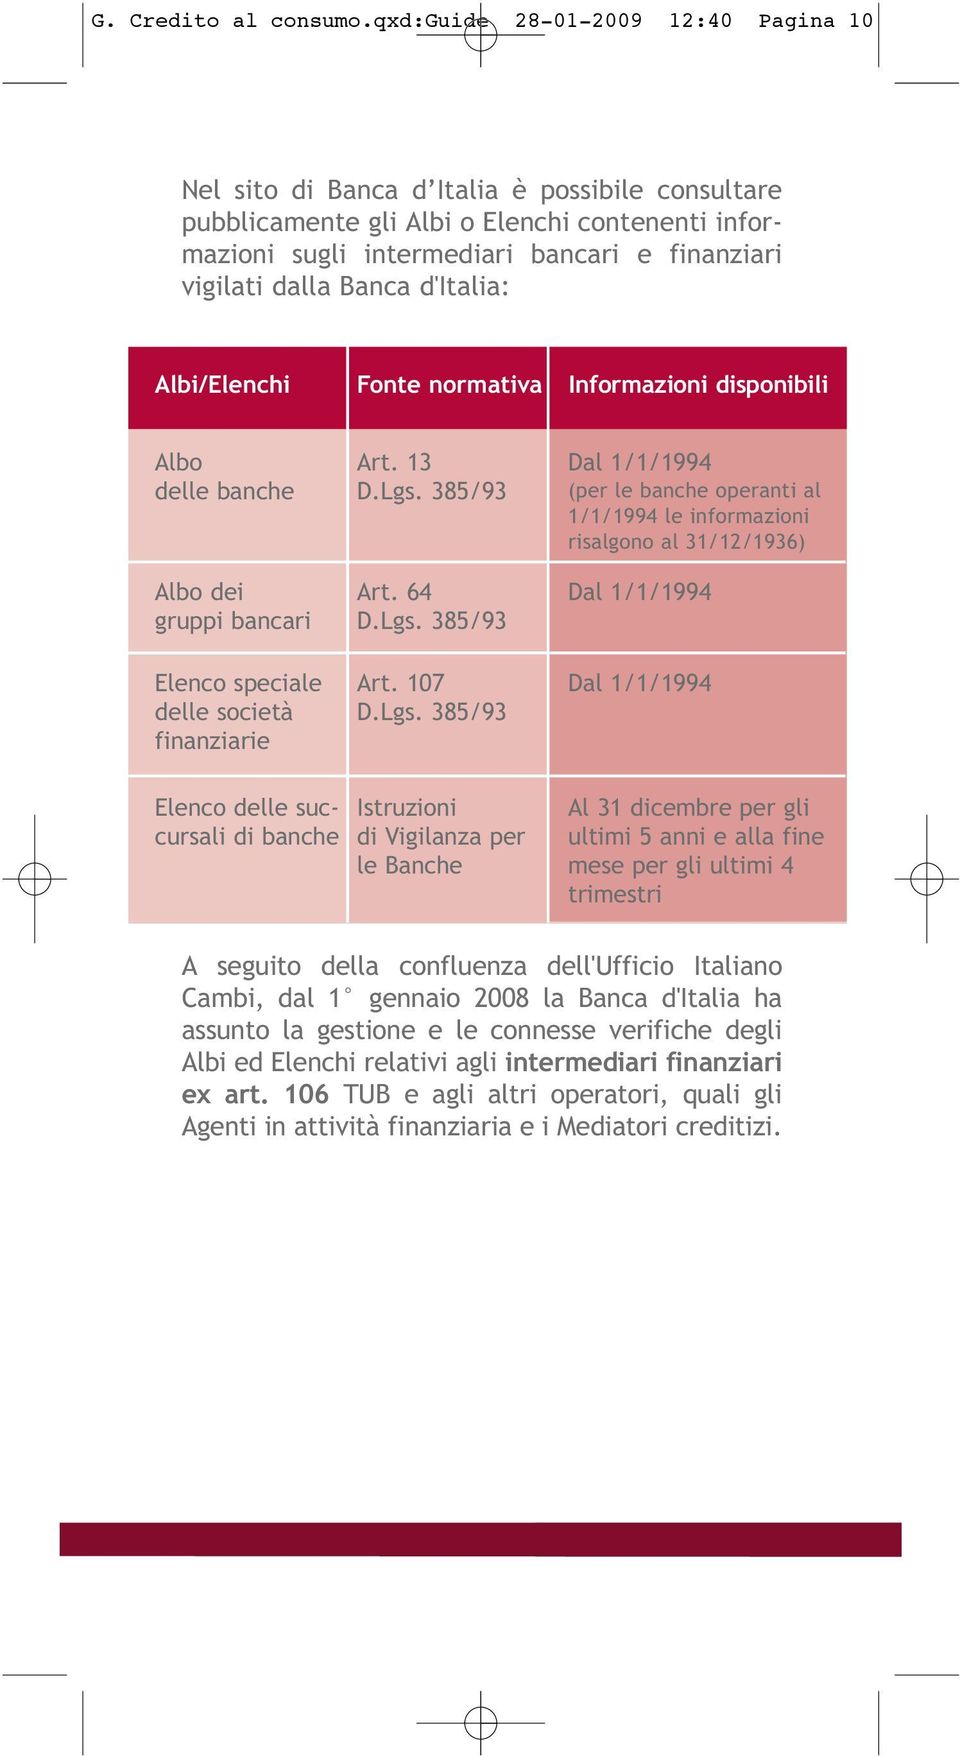 Banca d'italia: Albi/Elenchi Fonte normativa Informazioni disponibili Albo delle banche Albo dei gruppi bancari Elenco speciale delle società finanziarie Art. 13 D.Lgs. 385/93 Art. 64 D.Lgs. 385/93 Art. 107 D.